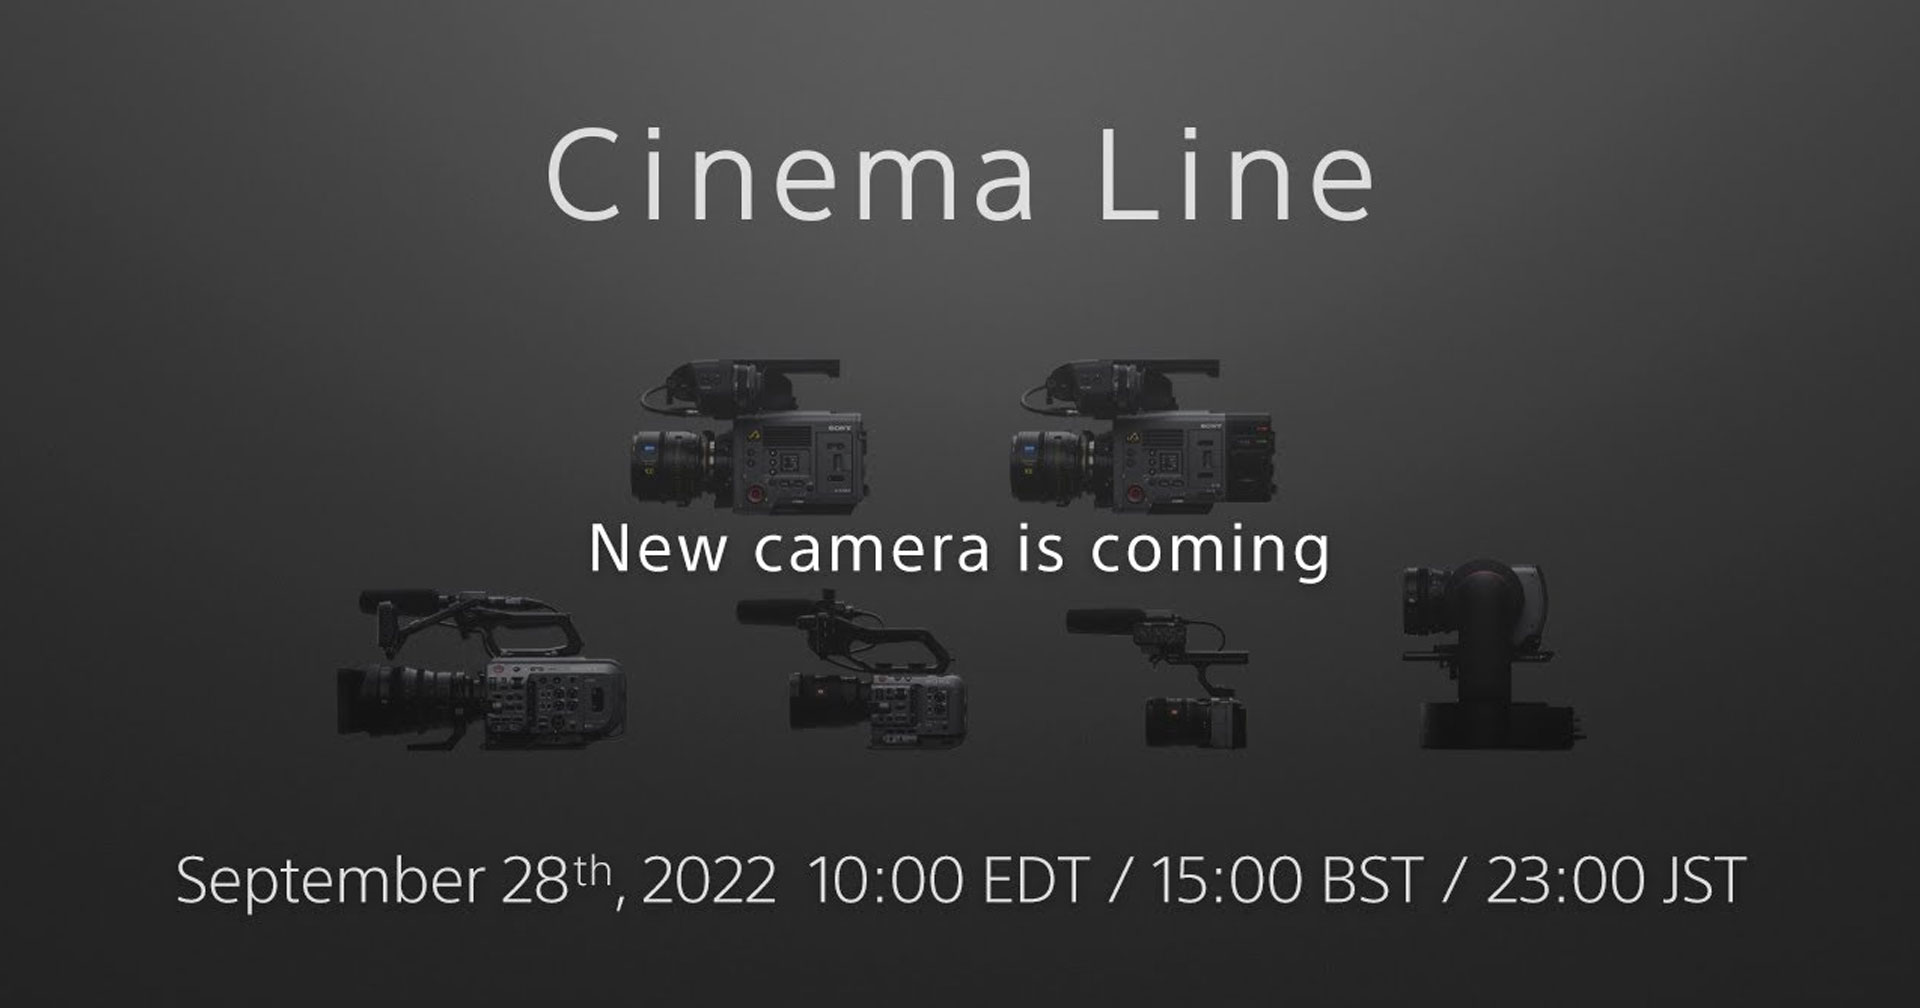 Sony ปล่อย teaser เตรียมเปิดตัวกล้อง Cinema Line รุ่นใหม่ 28 กันยายน หรือจะเป็น FX30 ที่ลือกัน!?